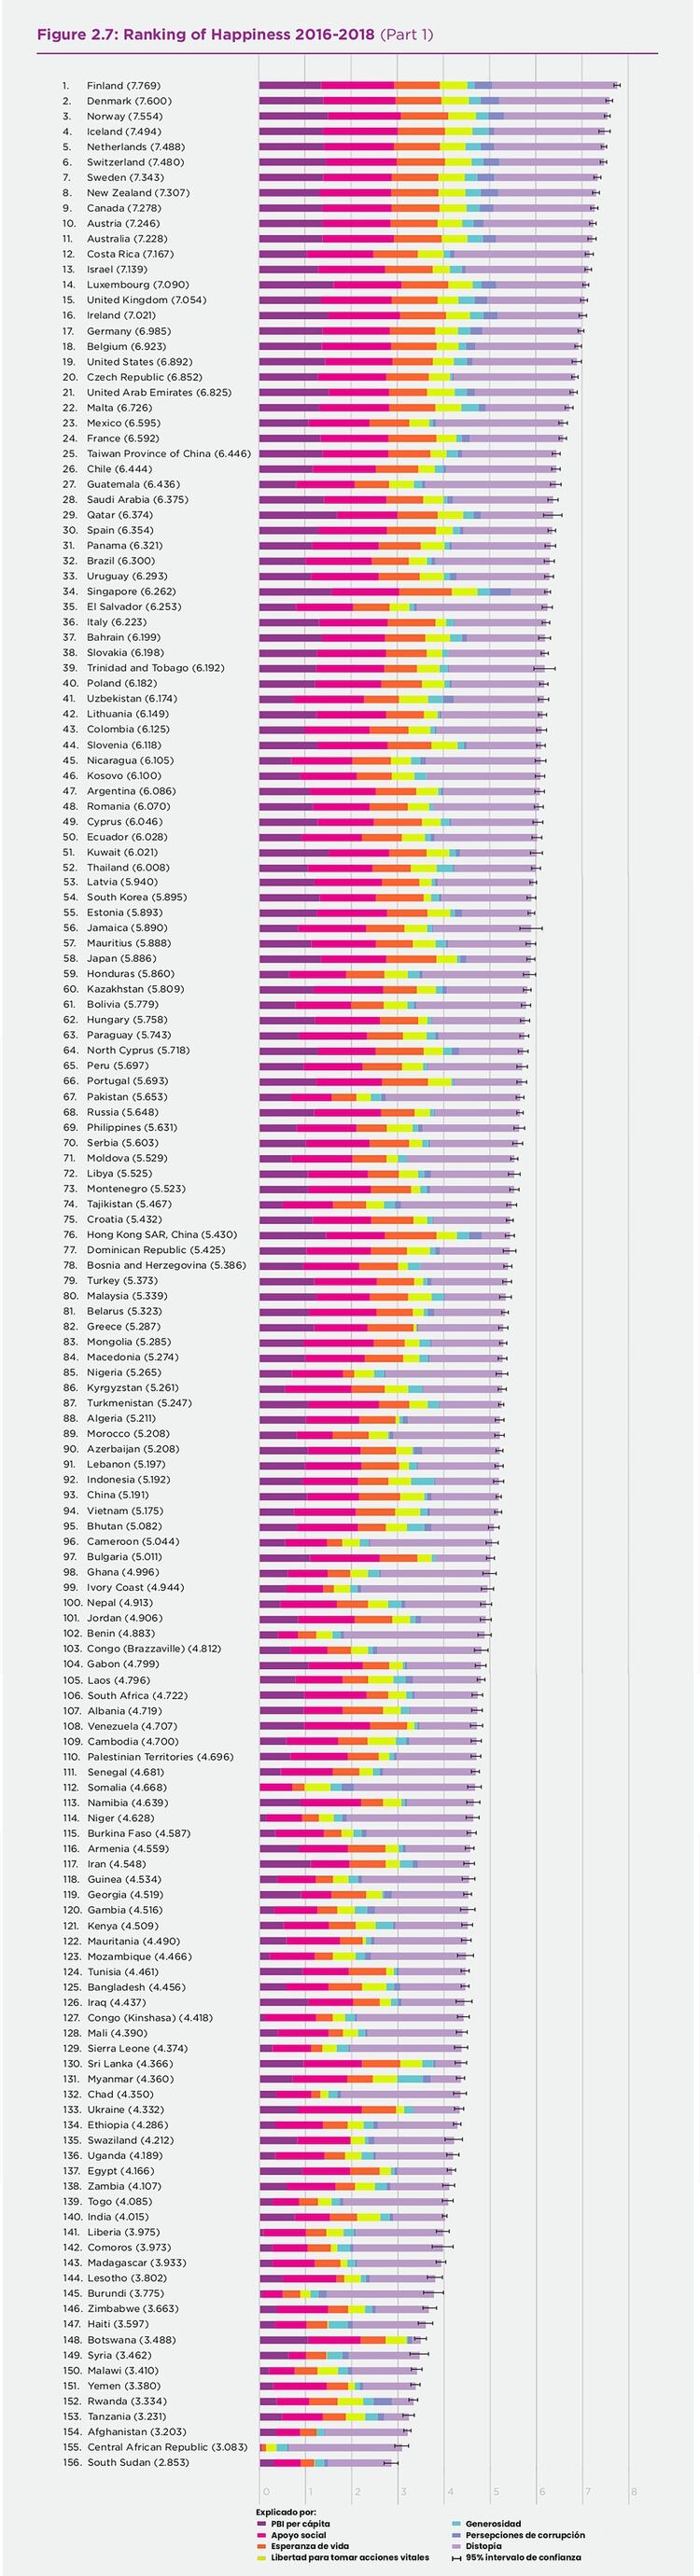 Indice de Desarrollo Humano (IDH) versus Monarquía o Republica Ranking-felicidad-1